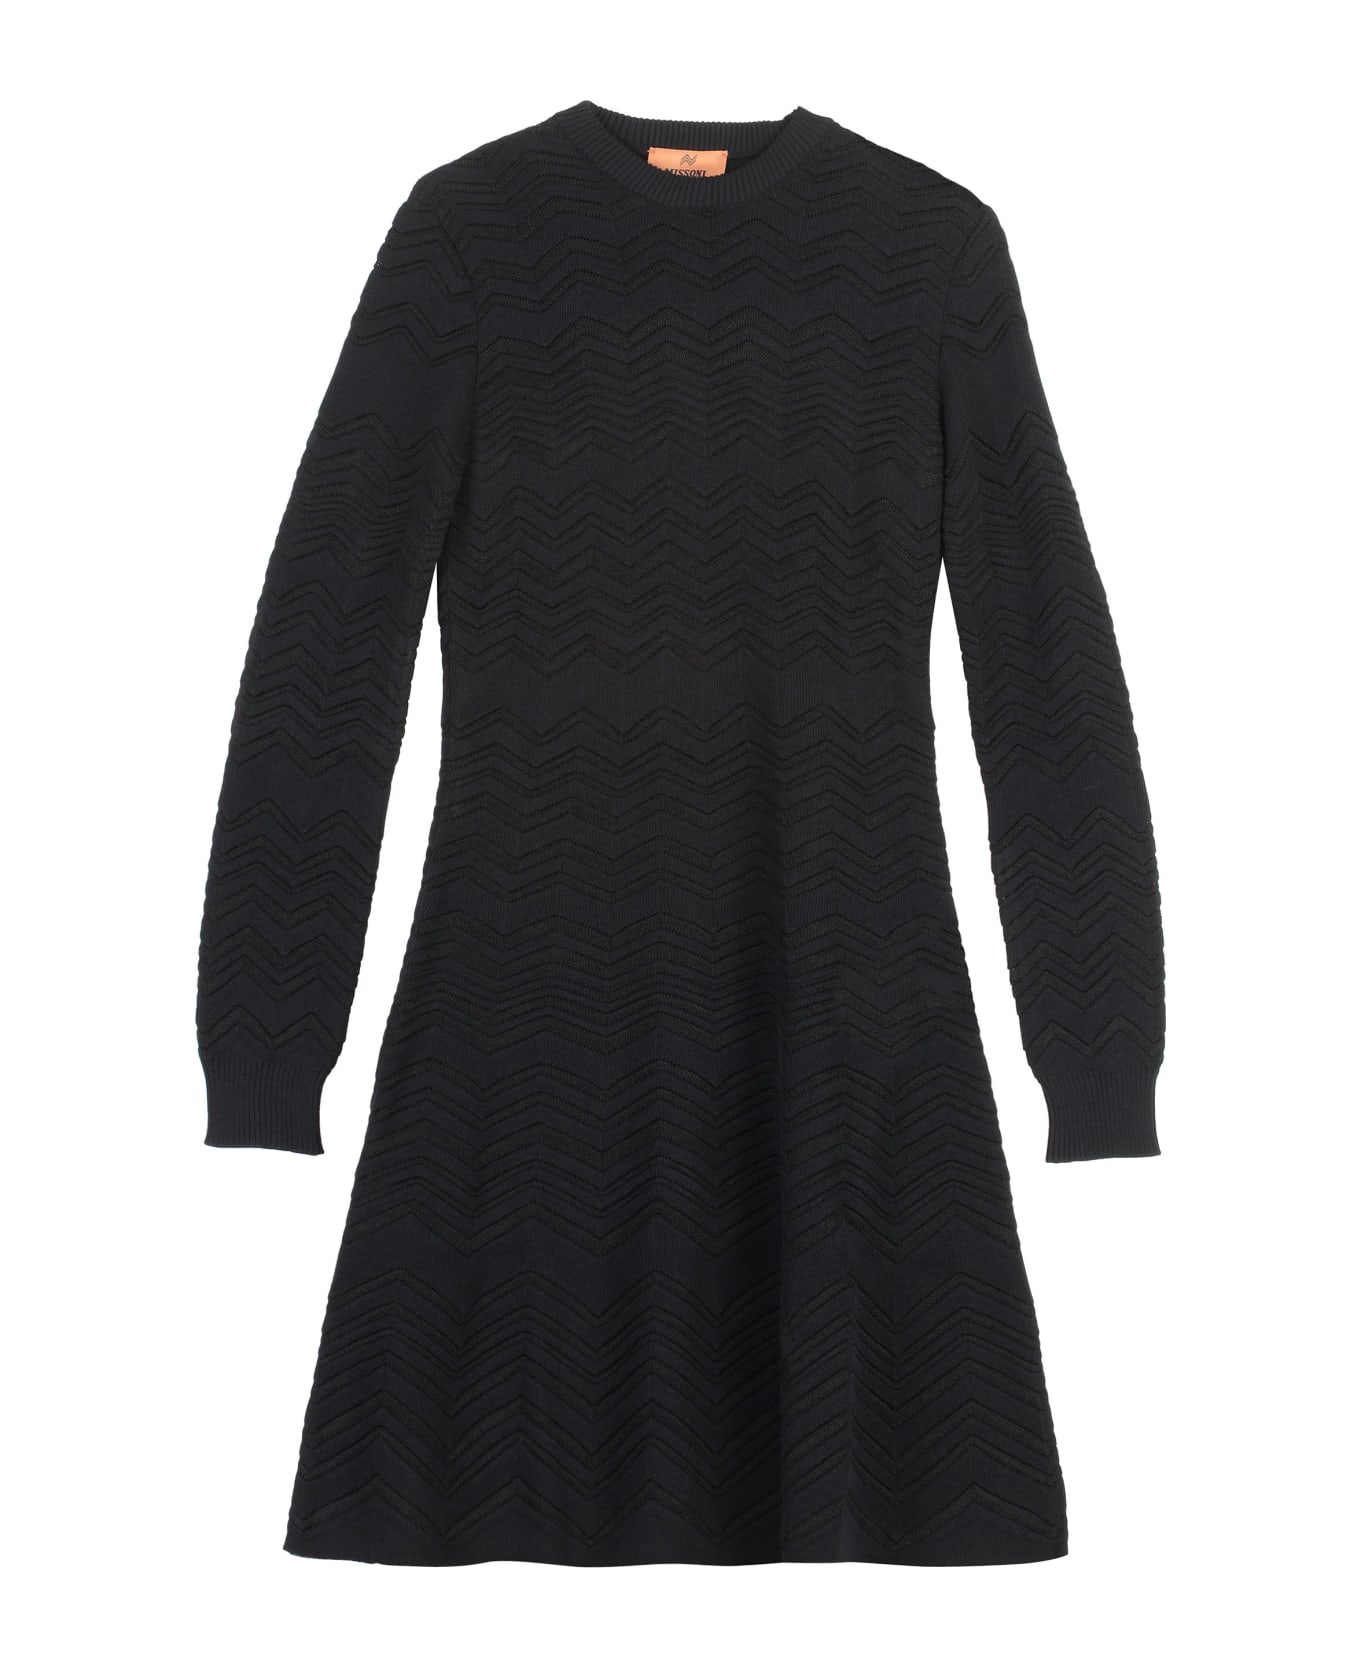 Missoni Geometric Jacquard Wool Dress - black